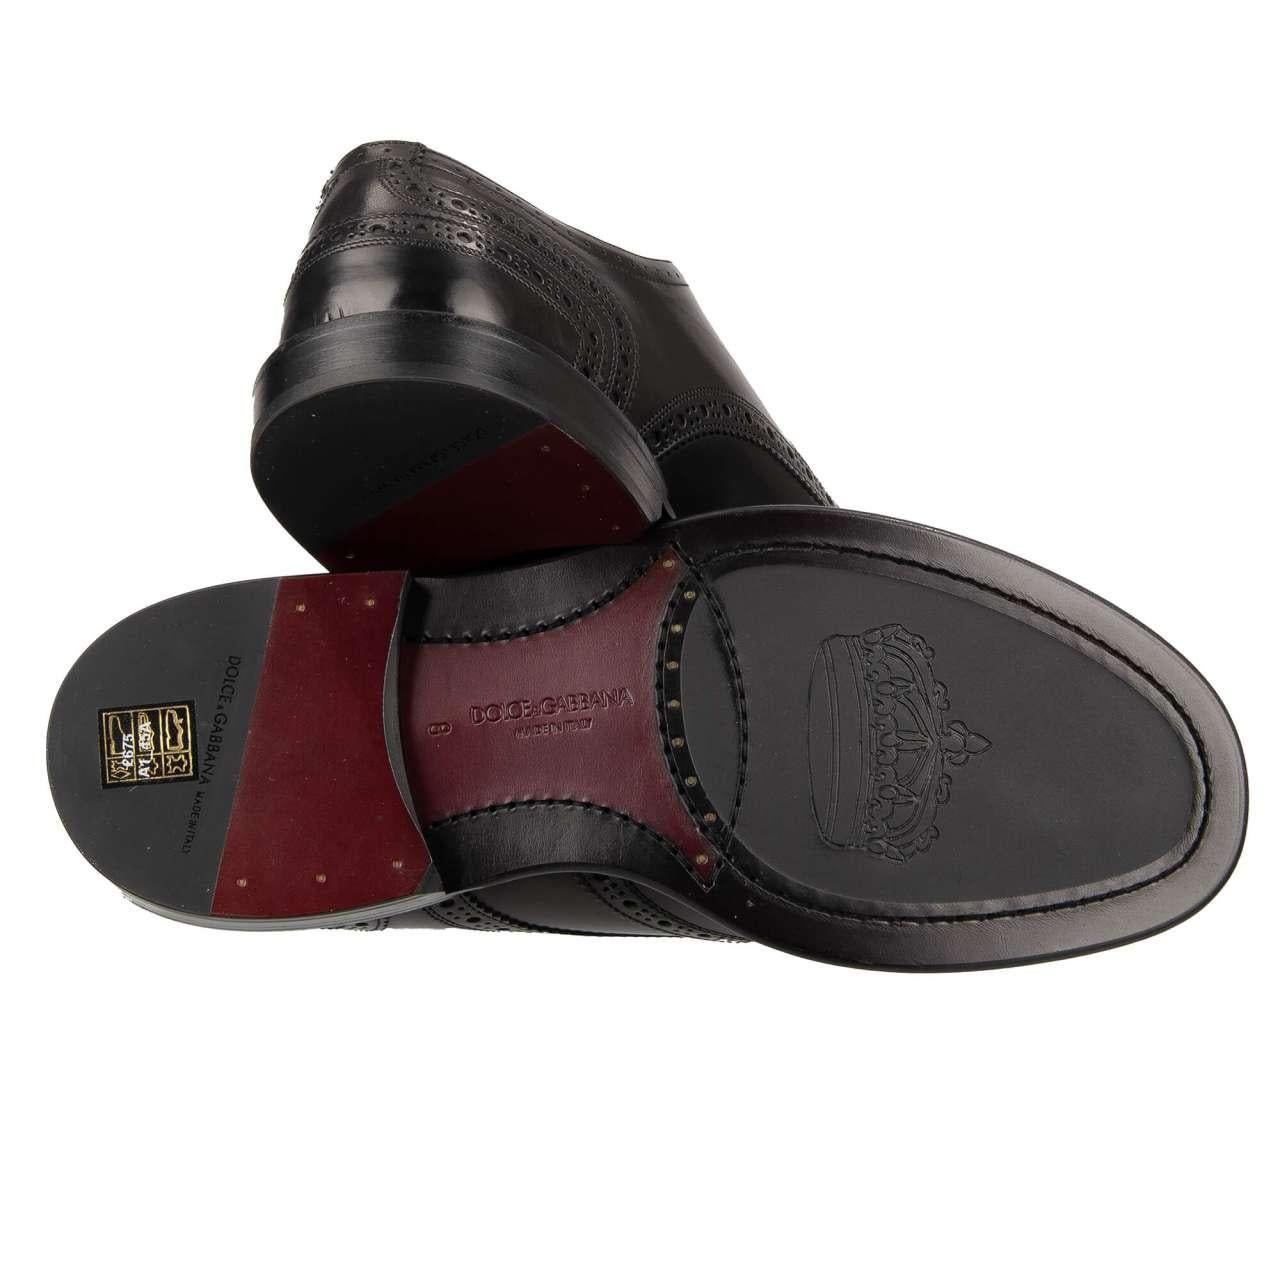 Dolce & Gabbana - DG Logo Formal Calf Leather Derby Shoes MARSALA Black EUR 41.5 For Sale 3